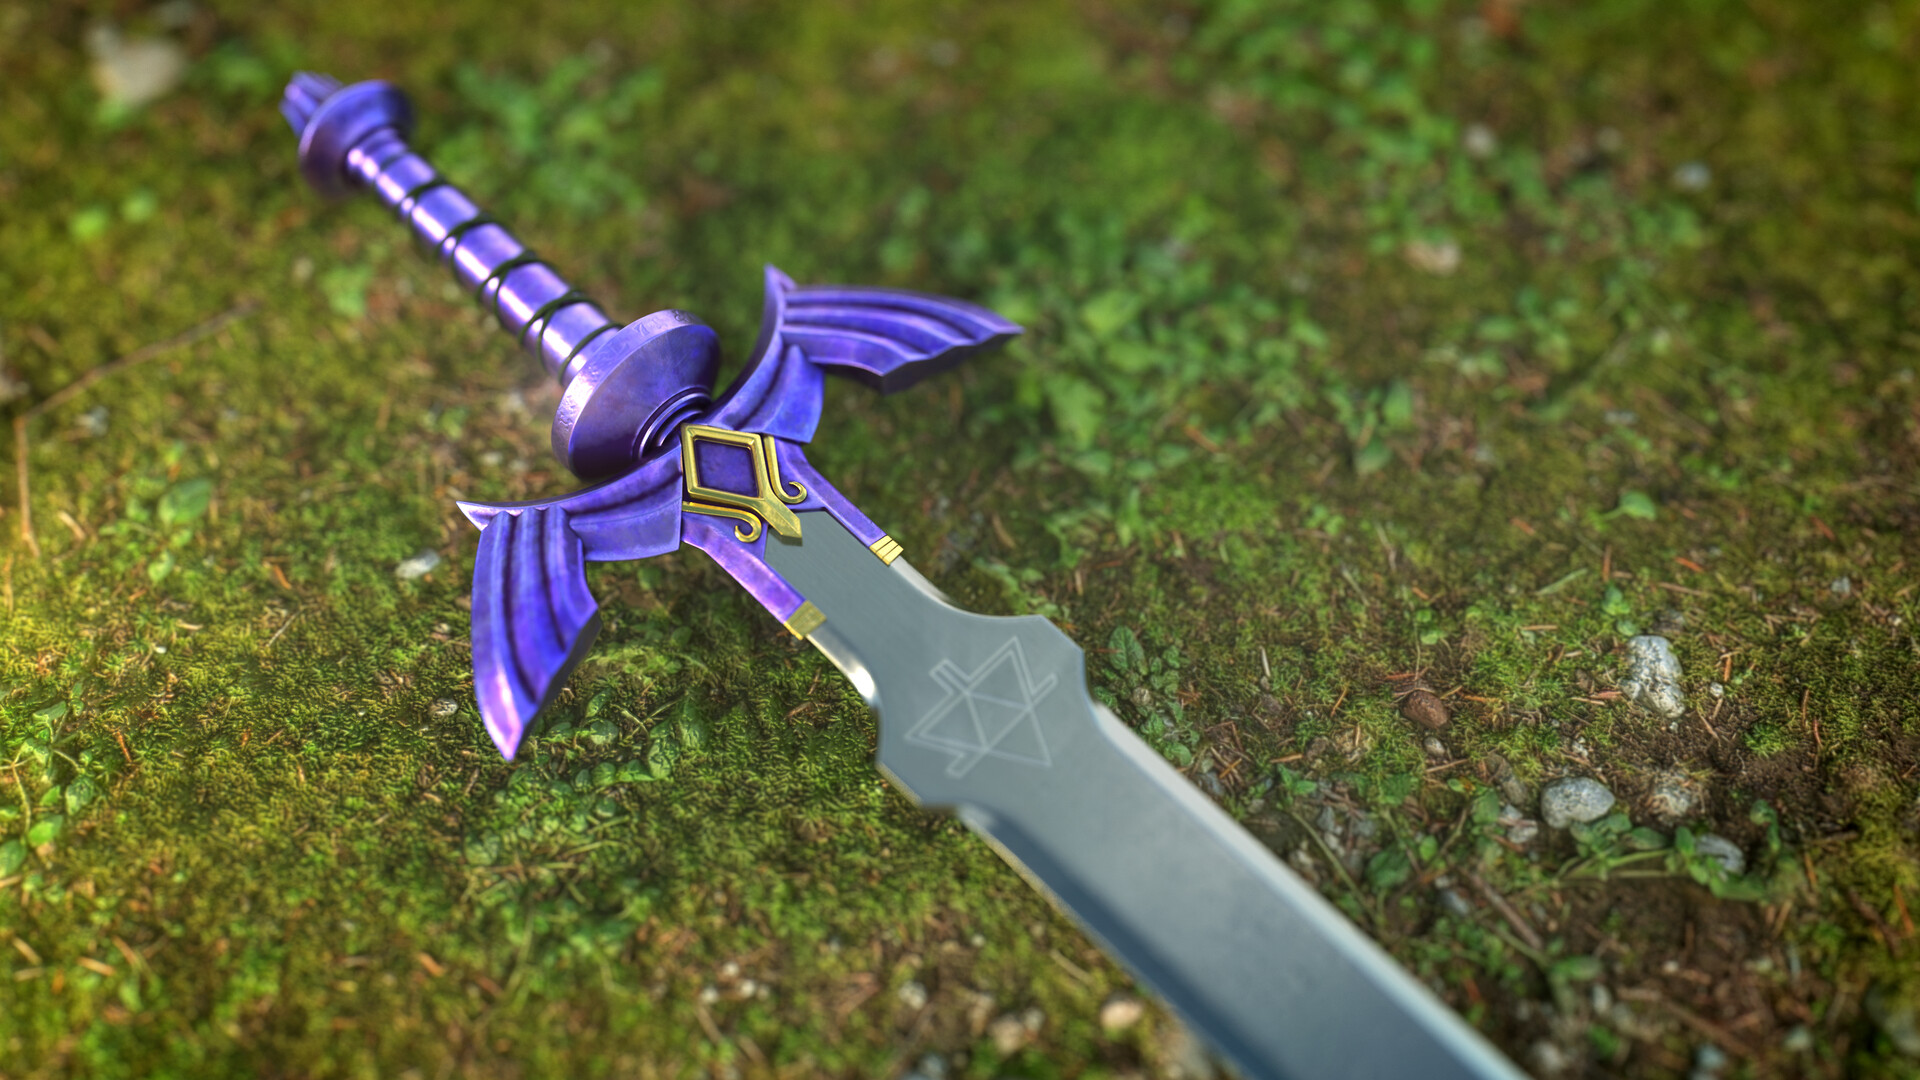 3D model of a Master Sword. 